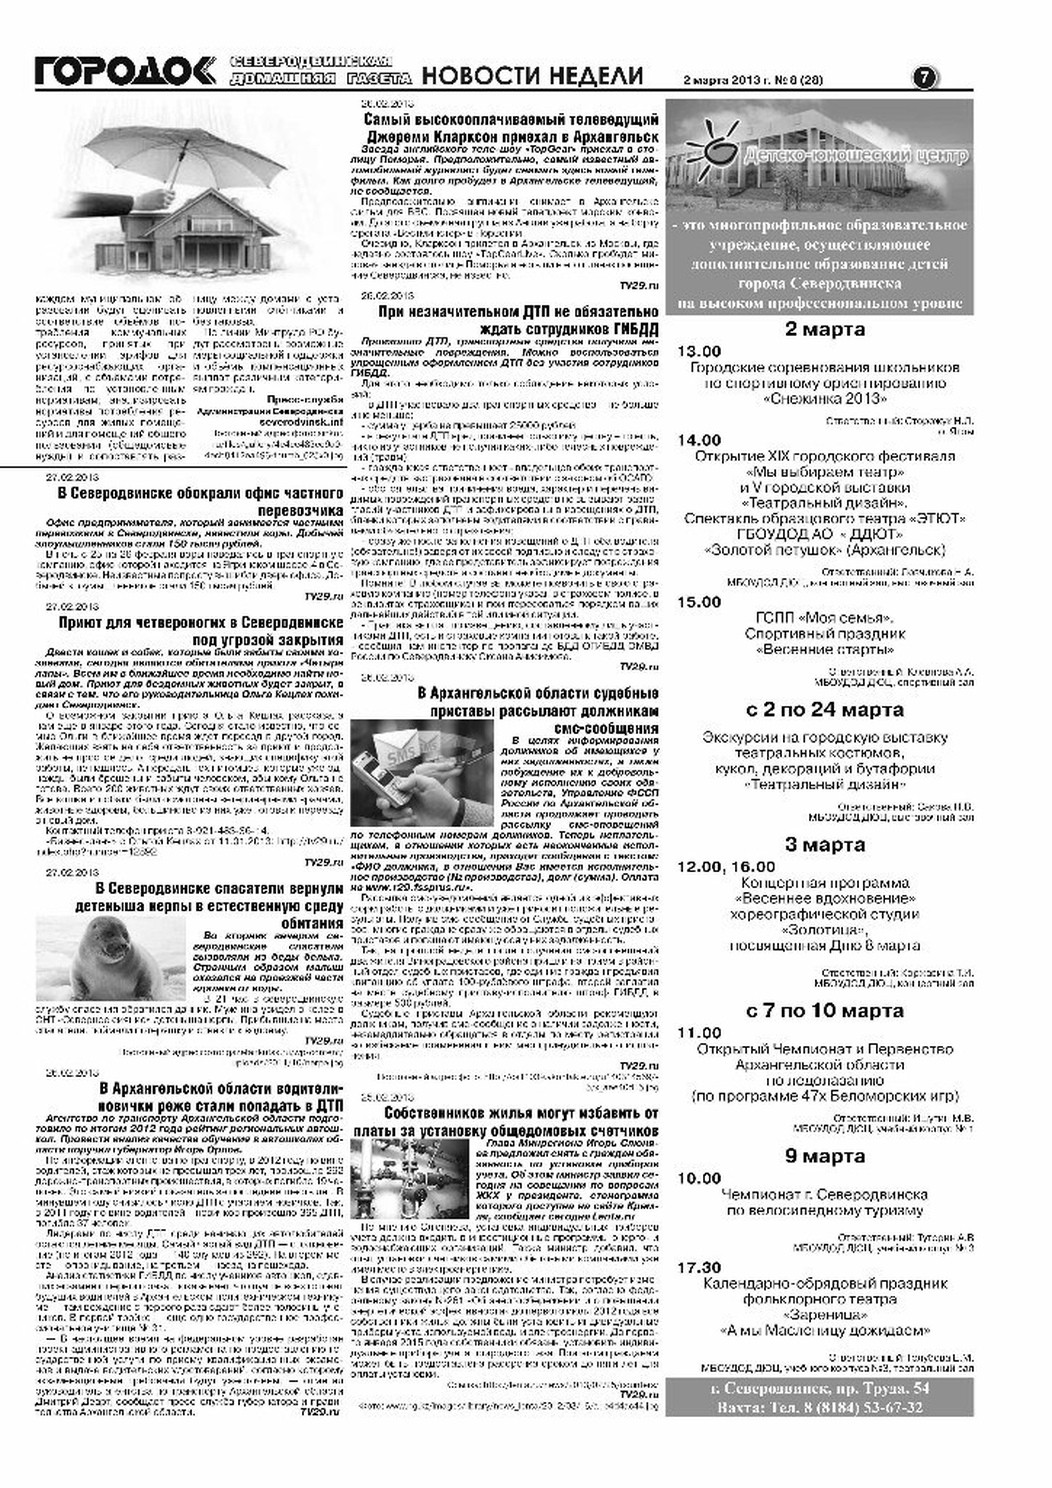 Городок плюс, выпуск номер 8 от 02 марта 2013 года, страница 7.